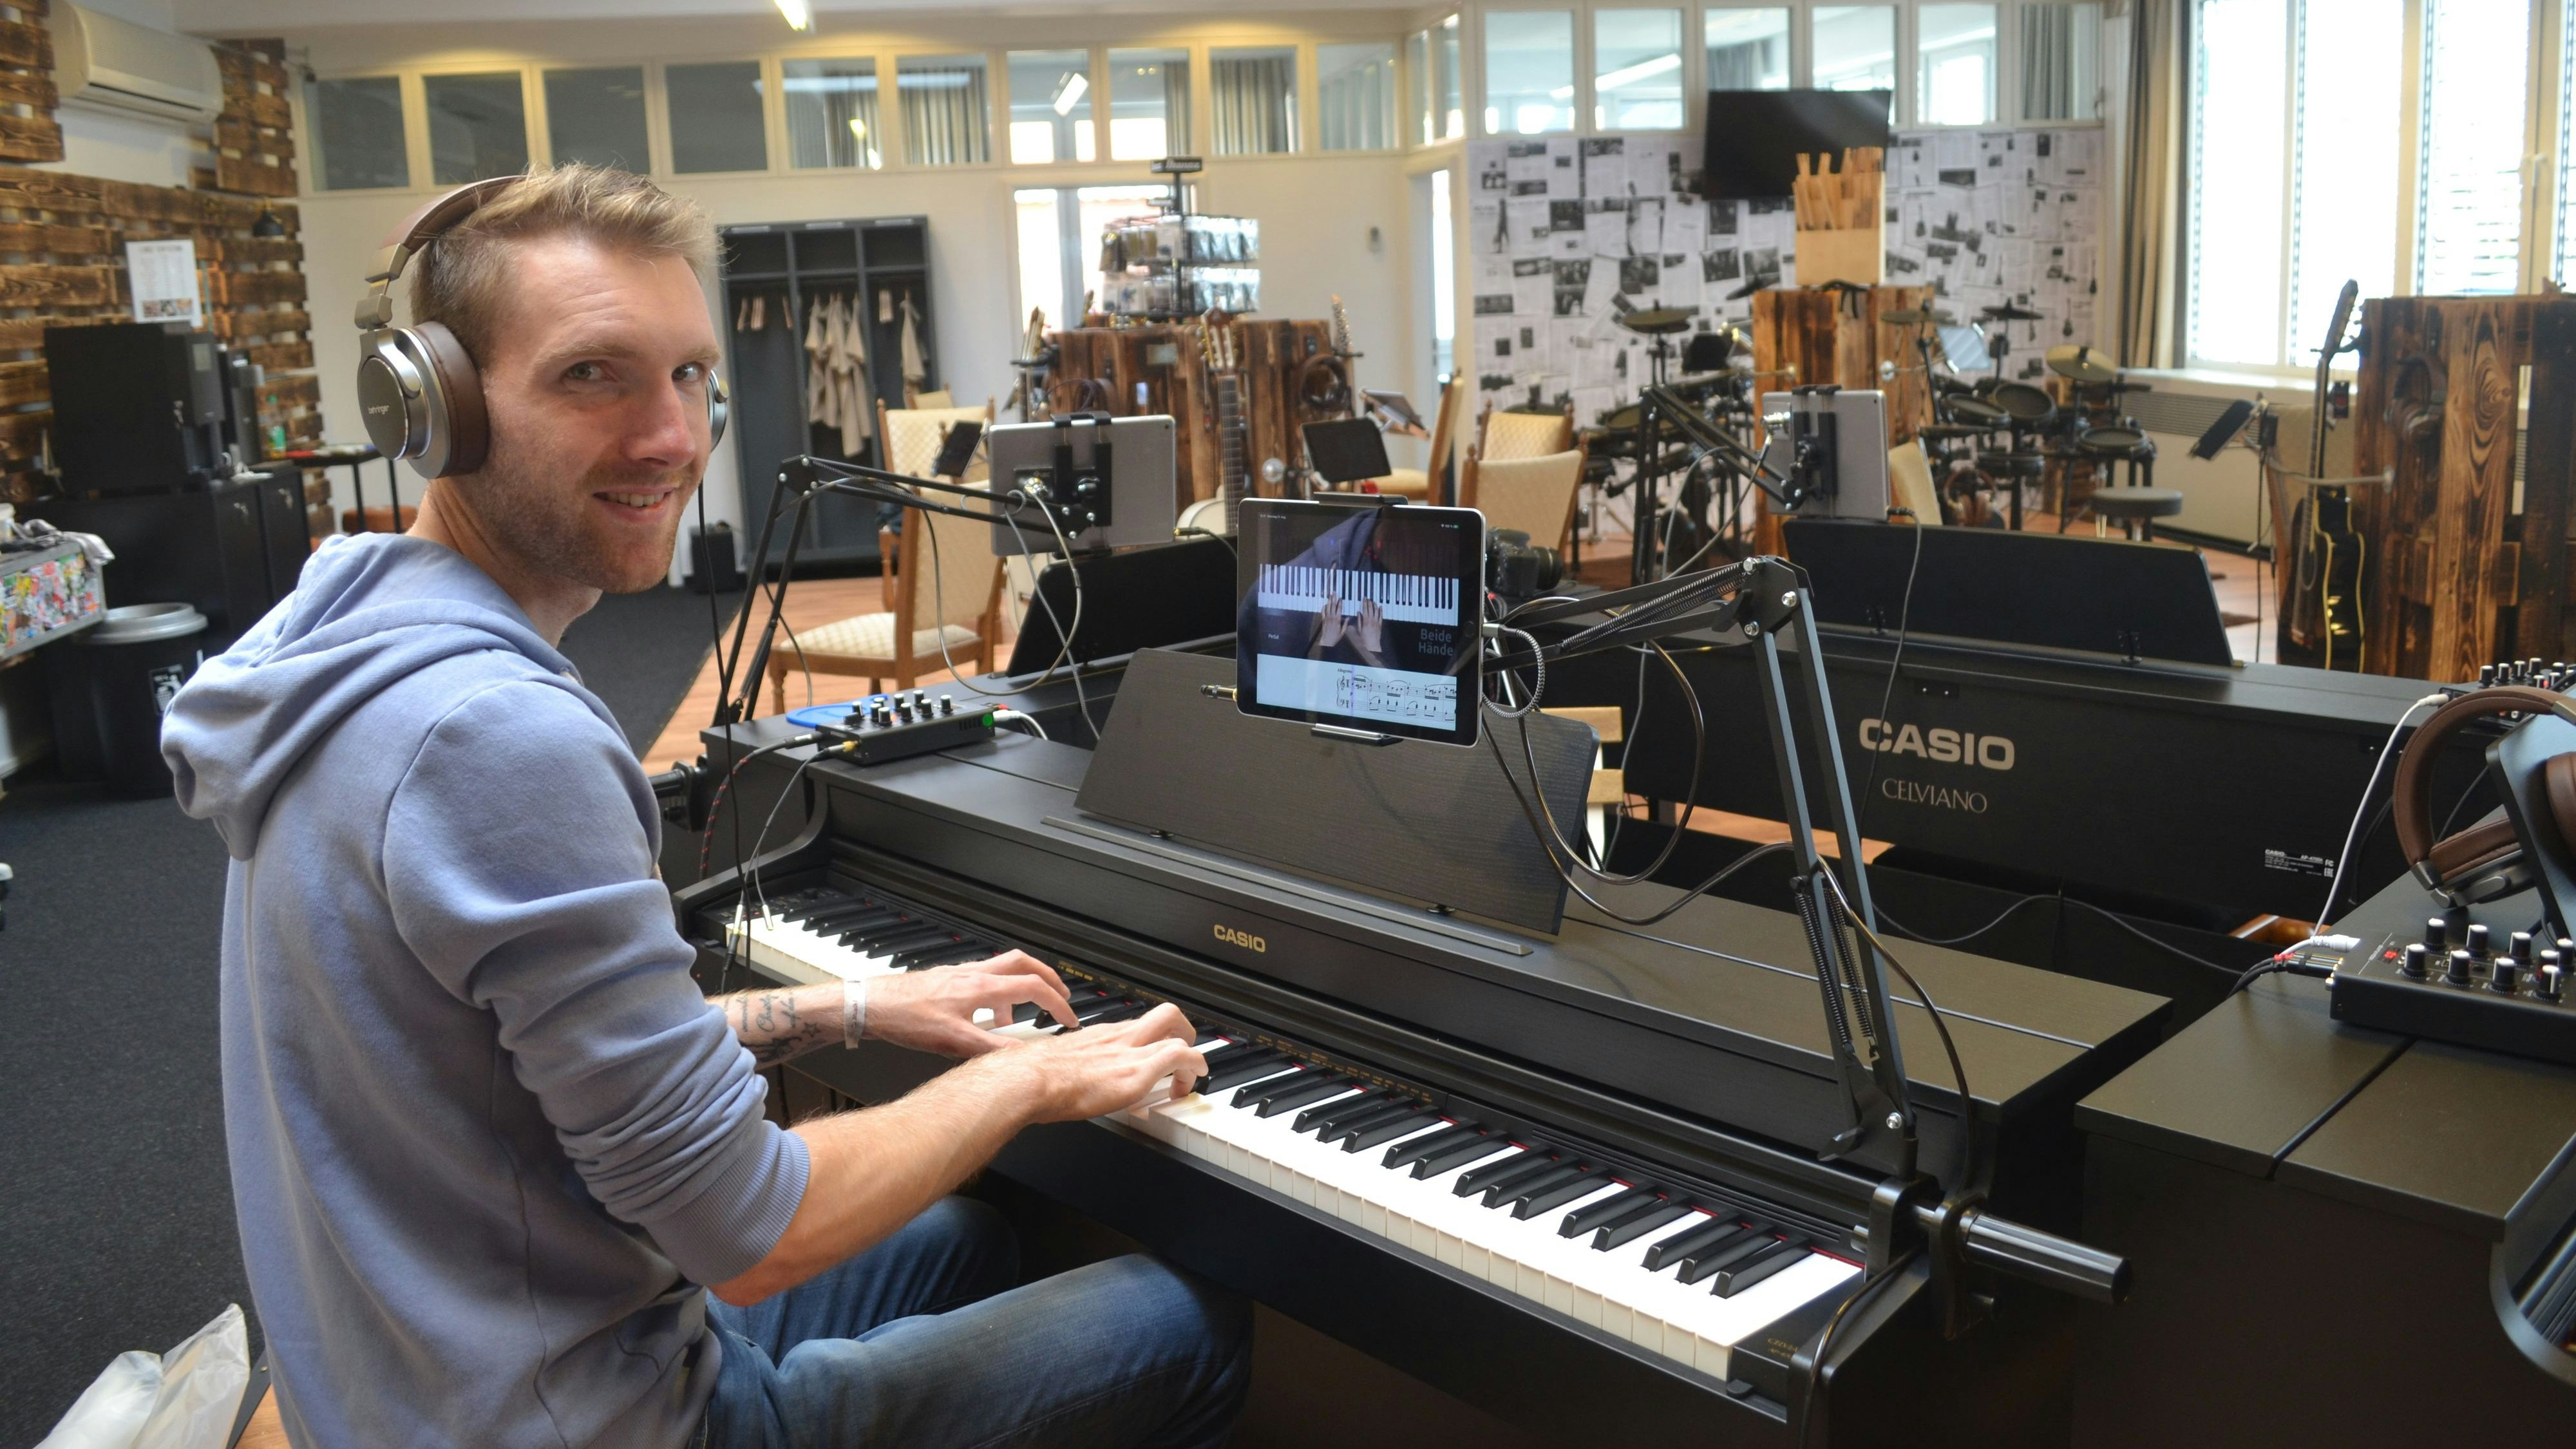 Chris Bruns hofft, mit seinem Musikschul-Konzept Denkblockaden zu lösen. Foto: Schrimper